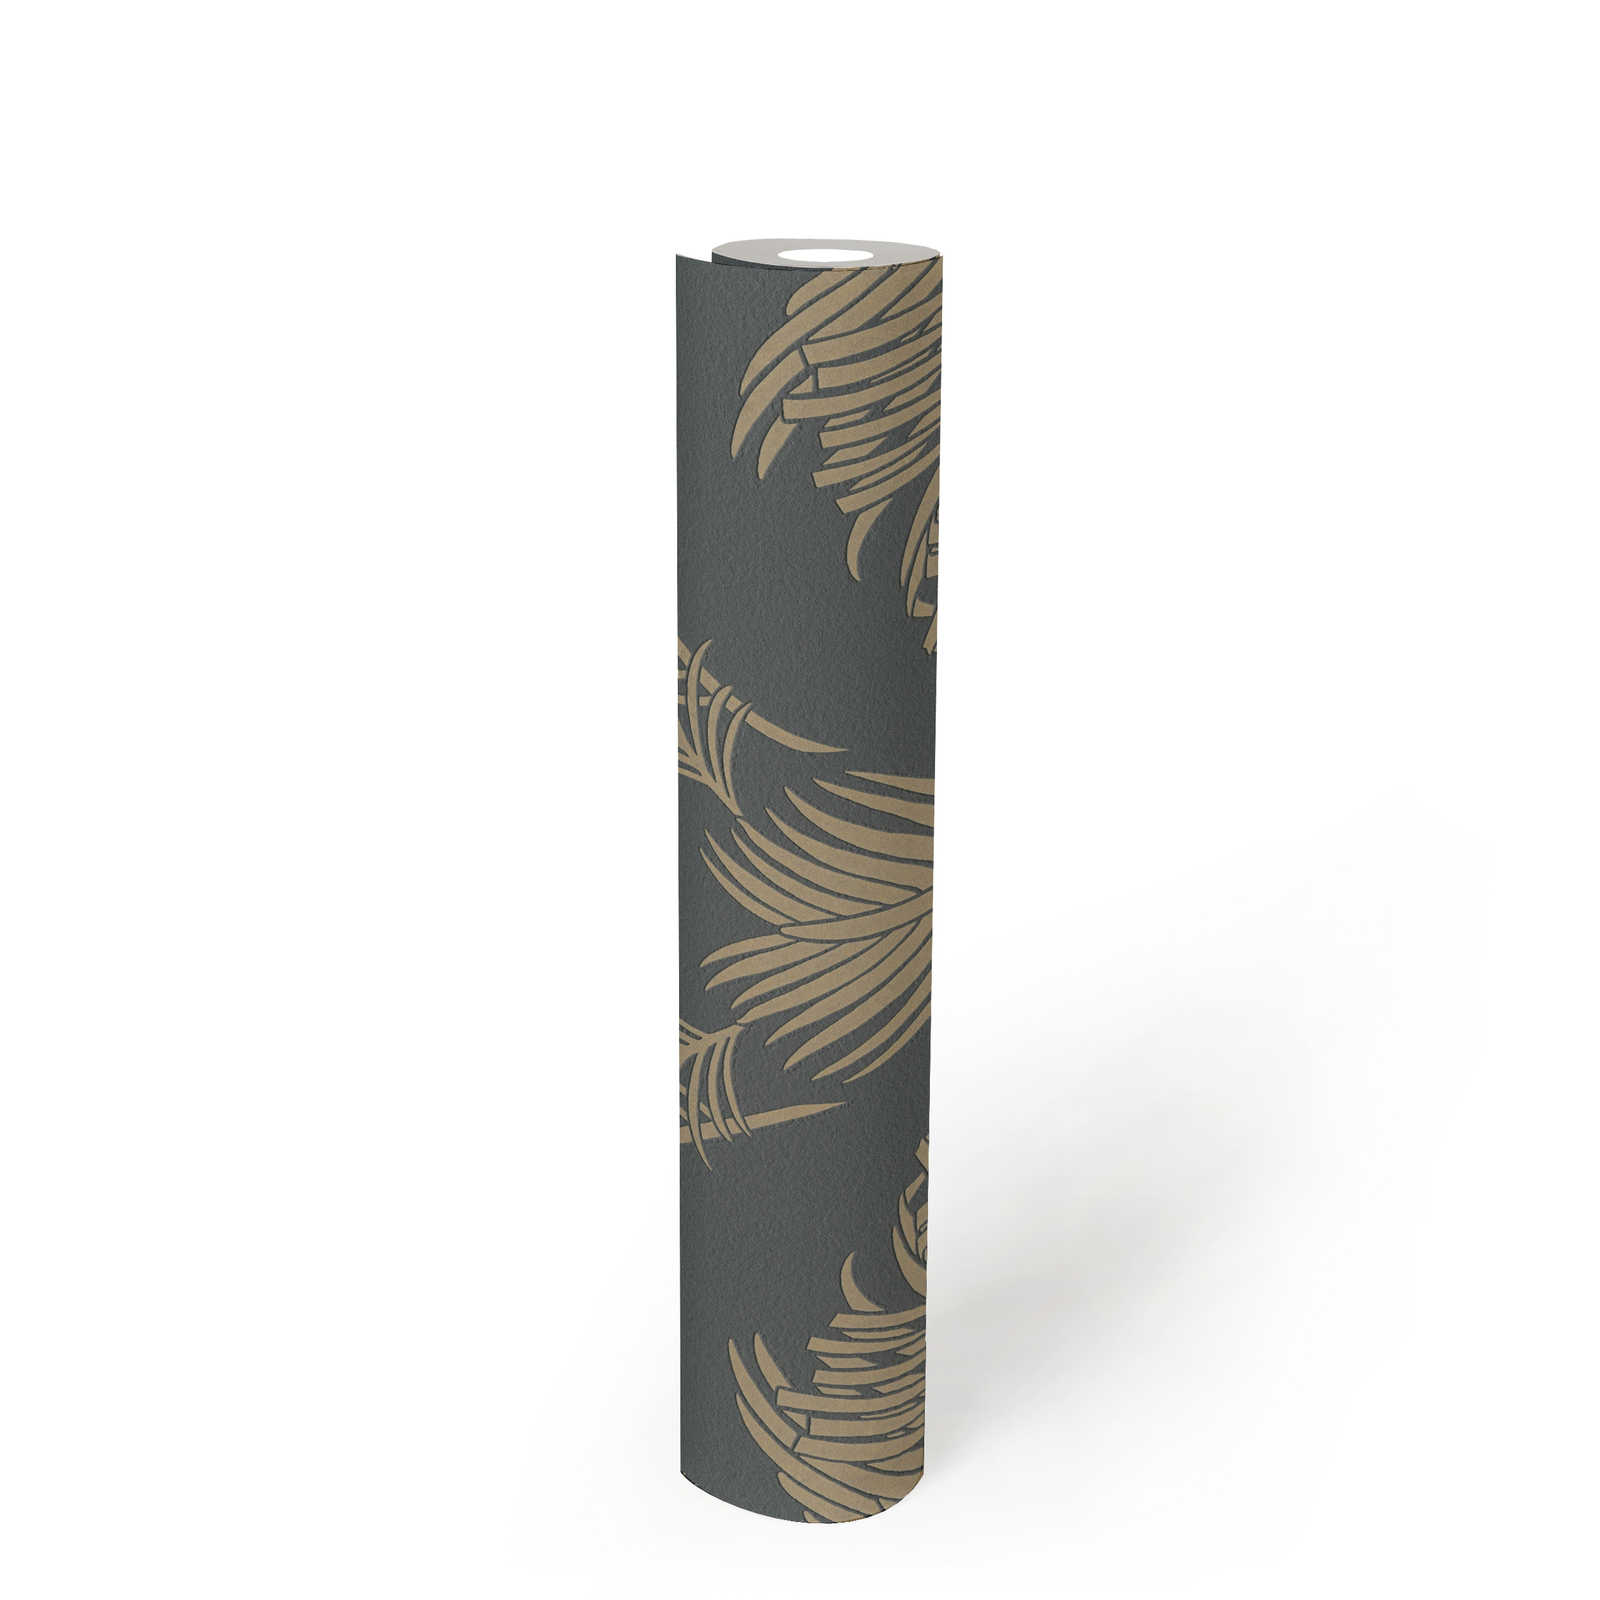             Papel pintado de hojas de palmera gris y dorado con estructura y efecto metálico
        